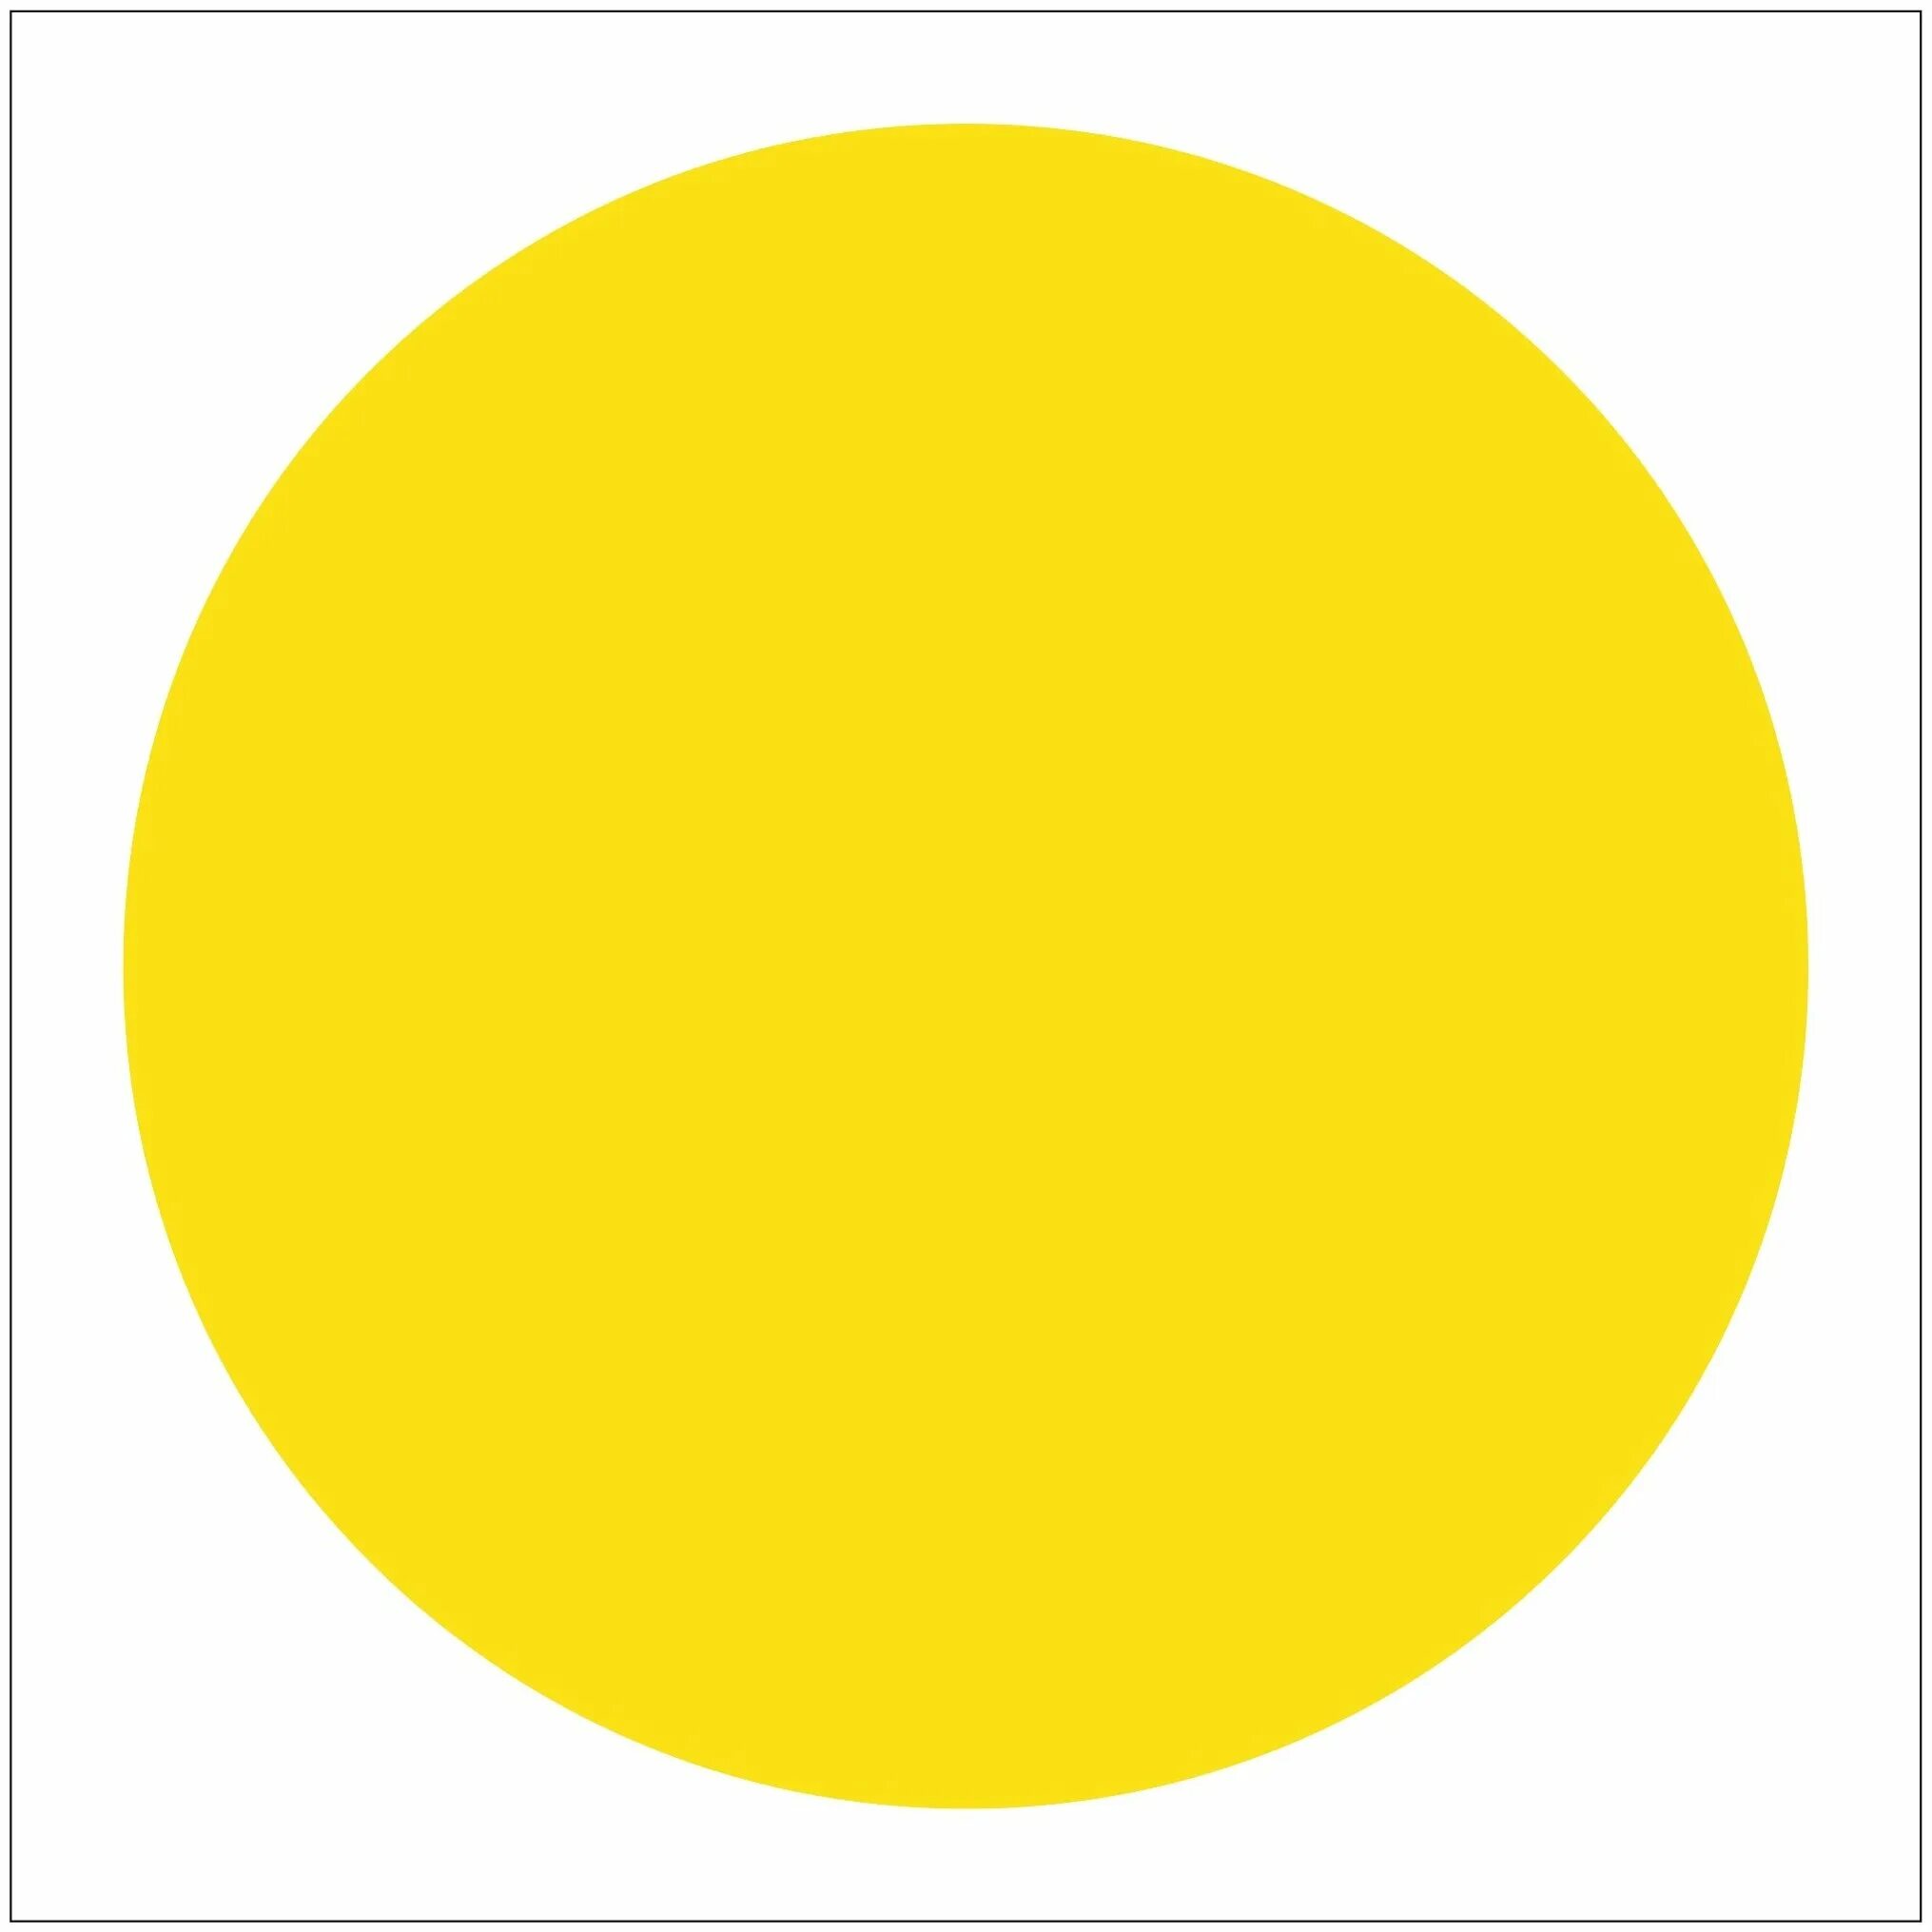 Круг желтый лист. Желтый круг. Круг желтого цвета. Желтый кружок. Желтые кружочки.